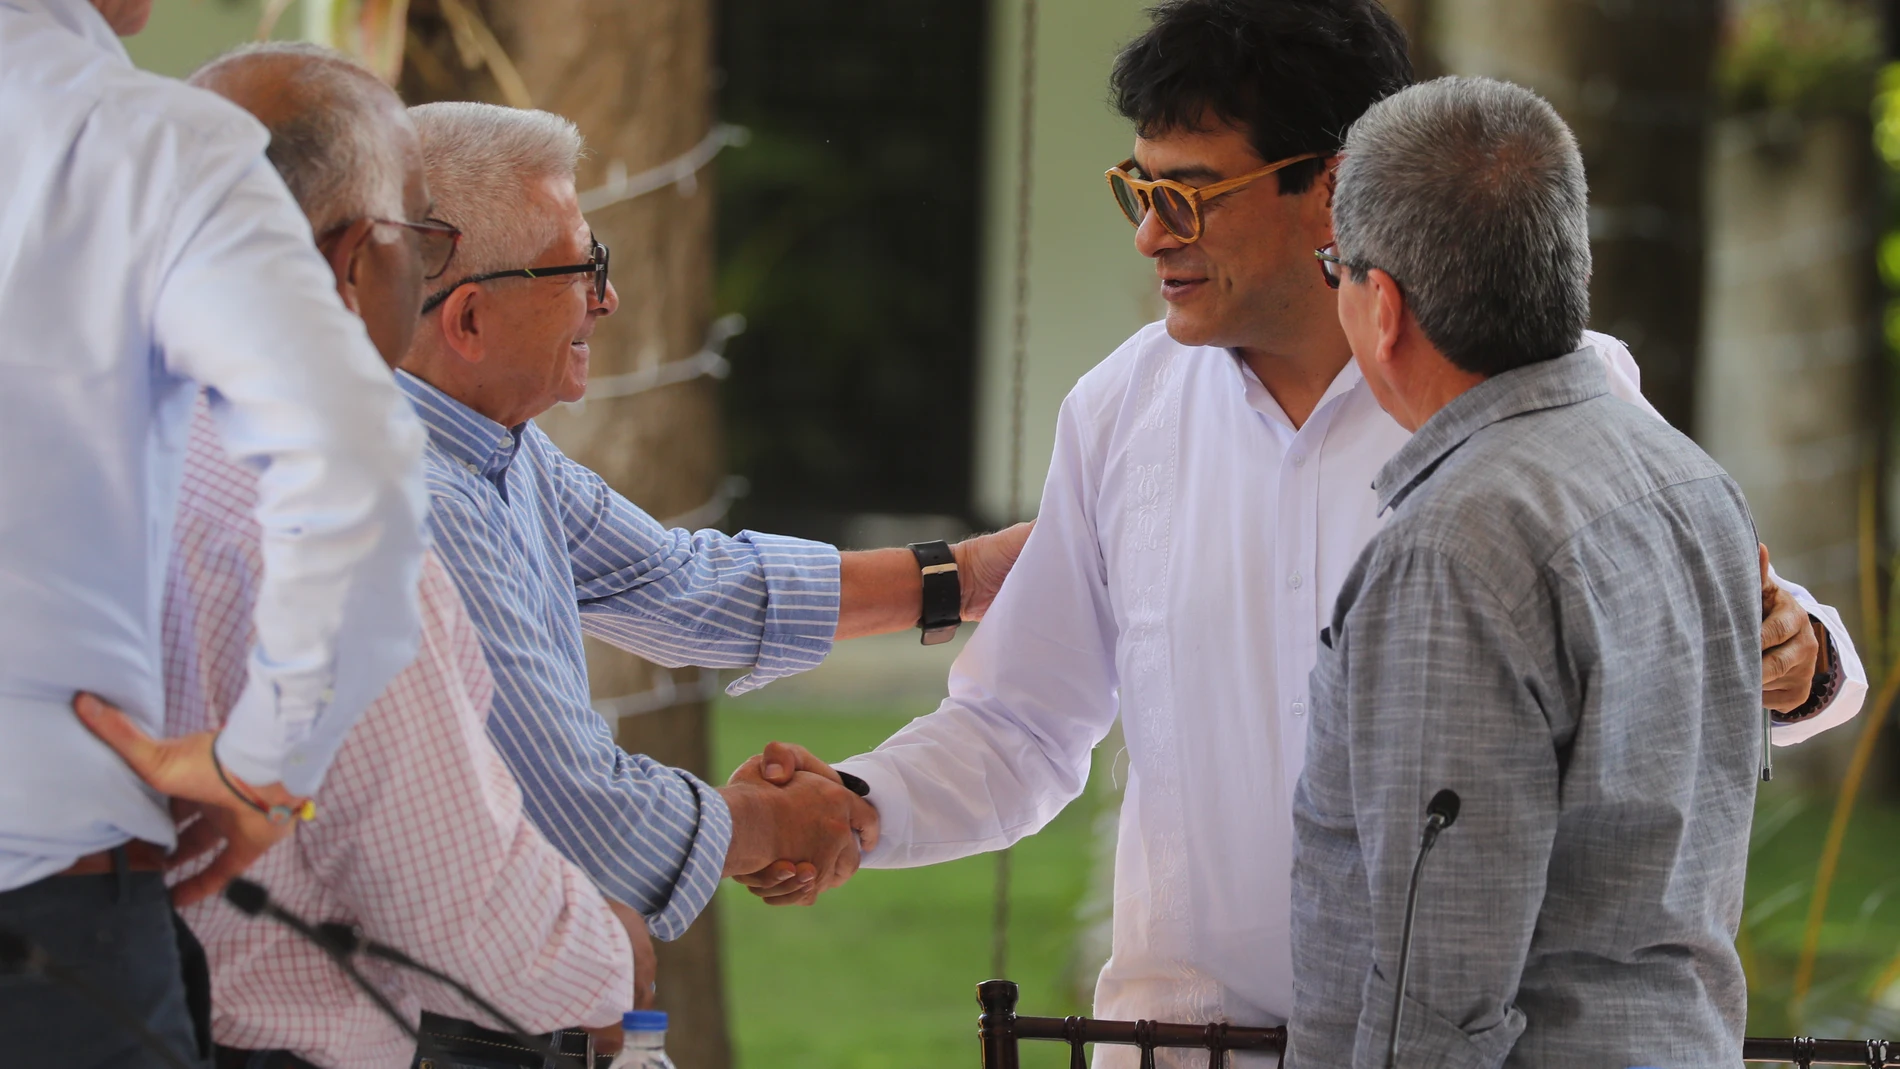 El portavoz del Gobierno colombiano Iván Danilo Rueda (c) conversa con los representantes del ELN Aureliano Carbonell (i) y Pablo Beltrán (d) durante una reunión en Caracas